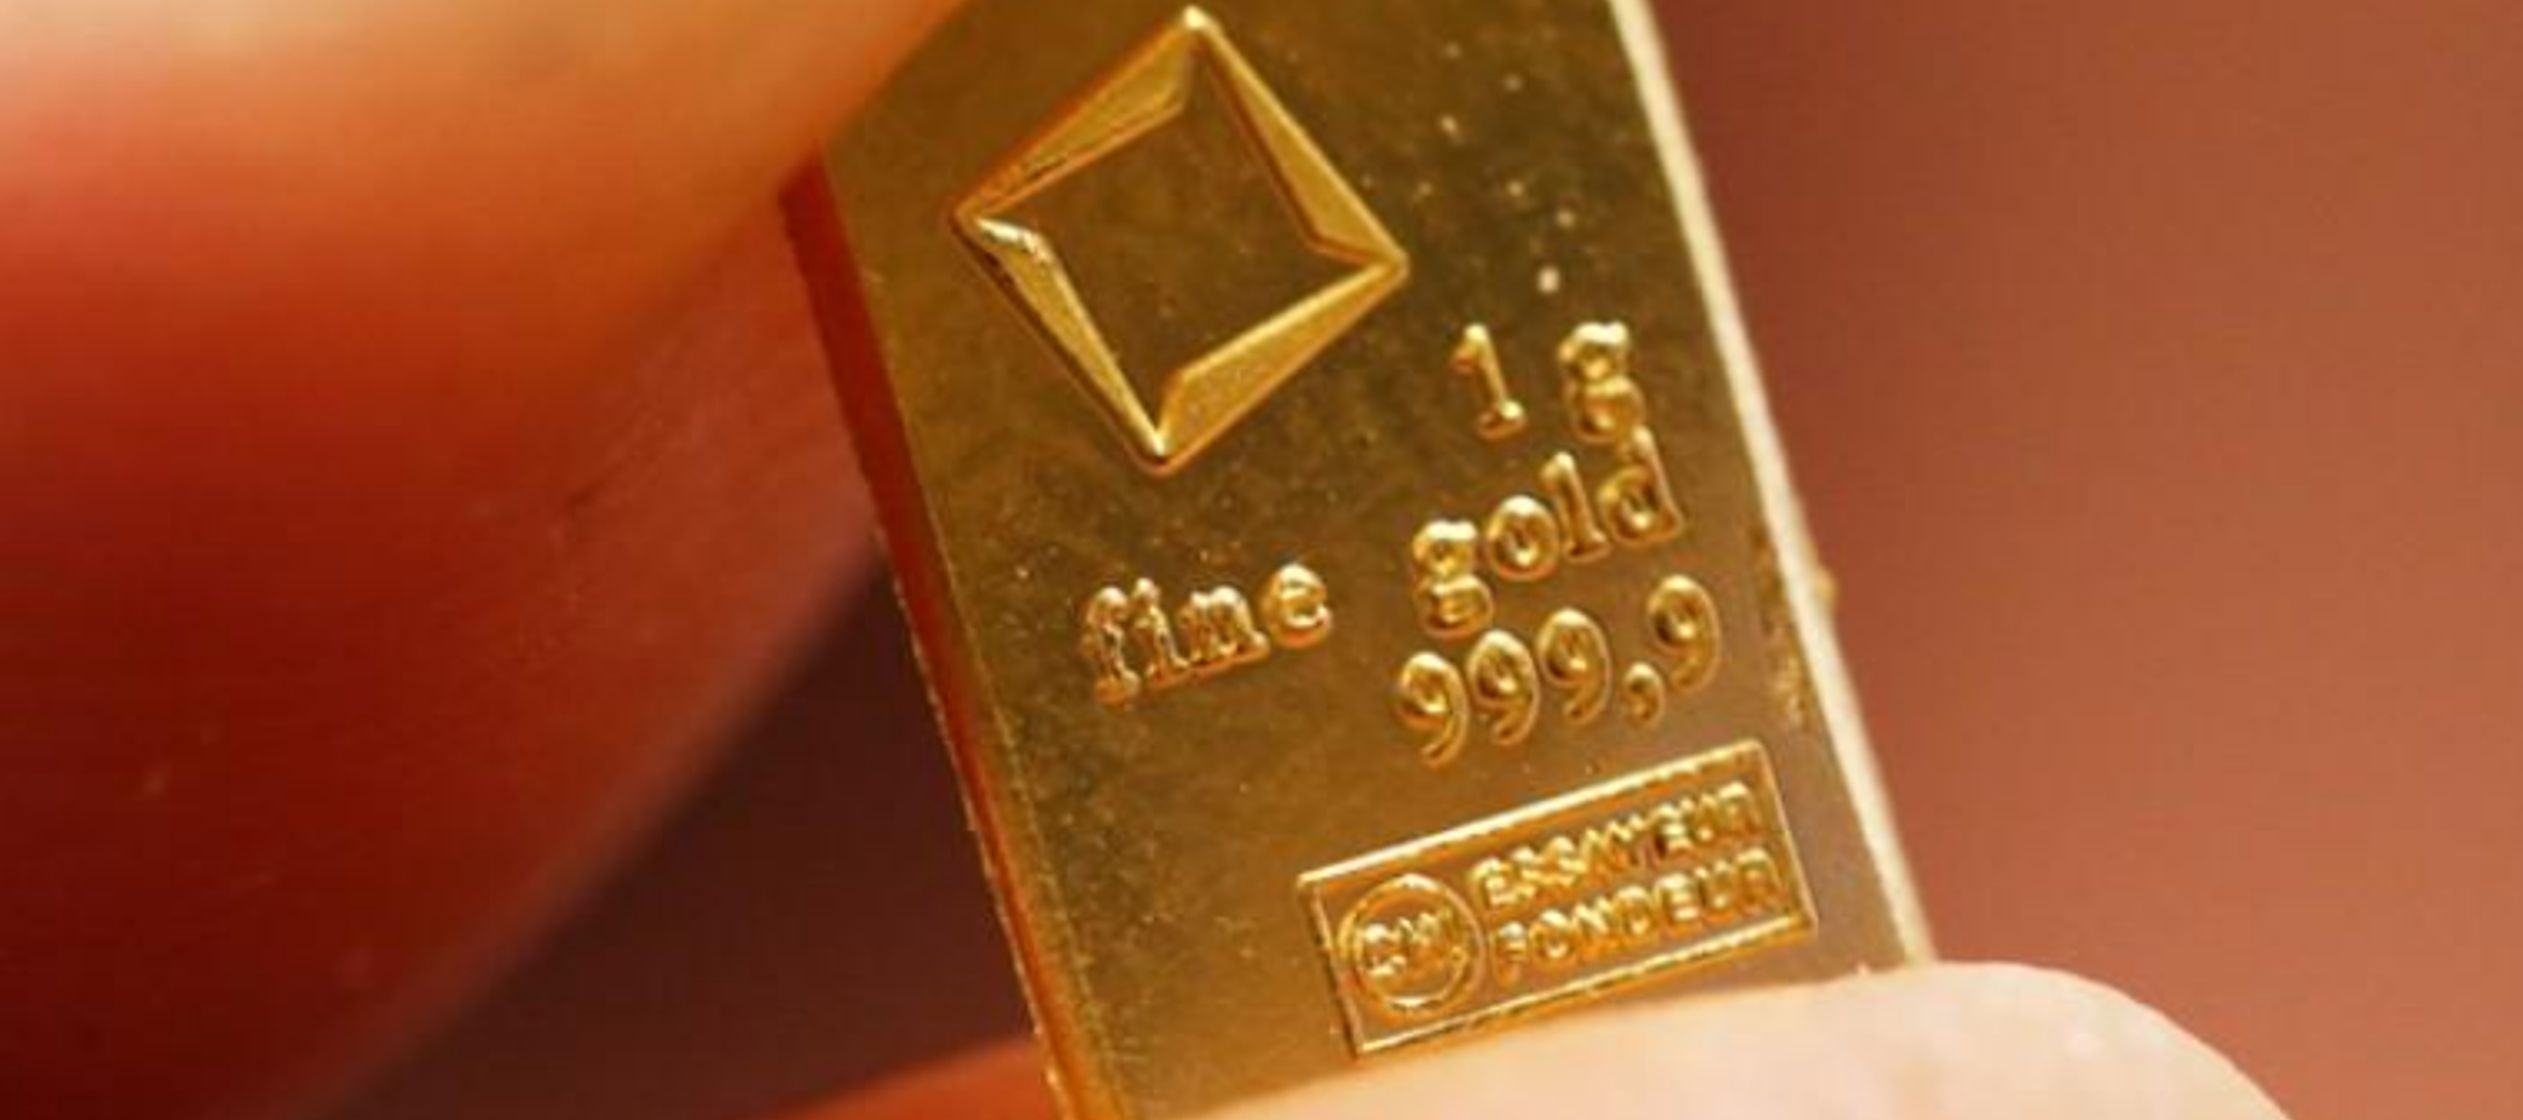 El oro al contado bajó un 0,2 por ciento a 1.274,15 dólares por onza a las 1740 GMT,...